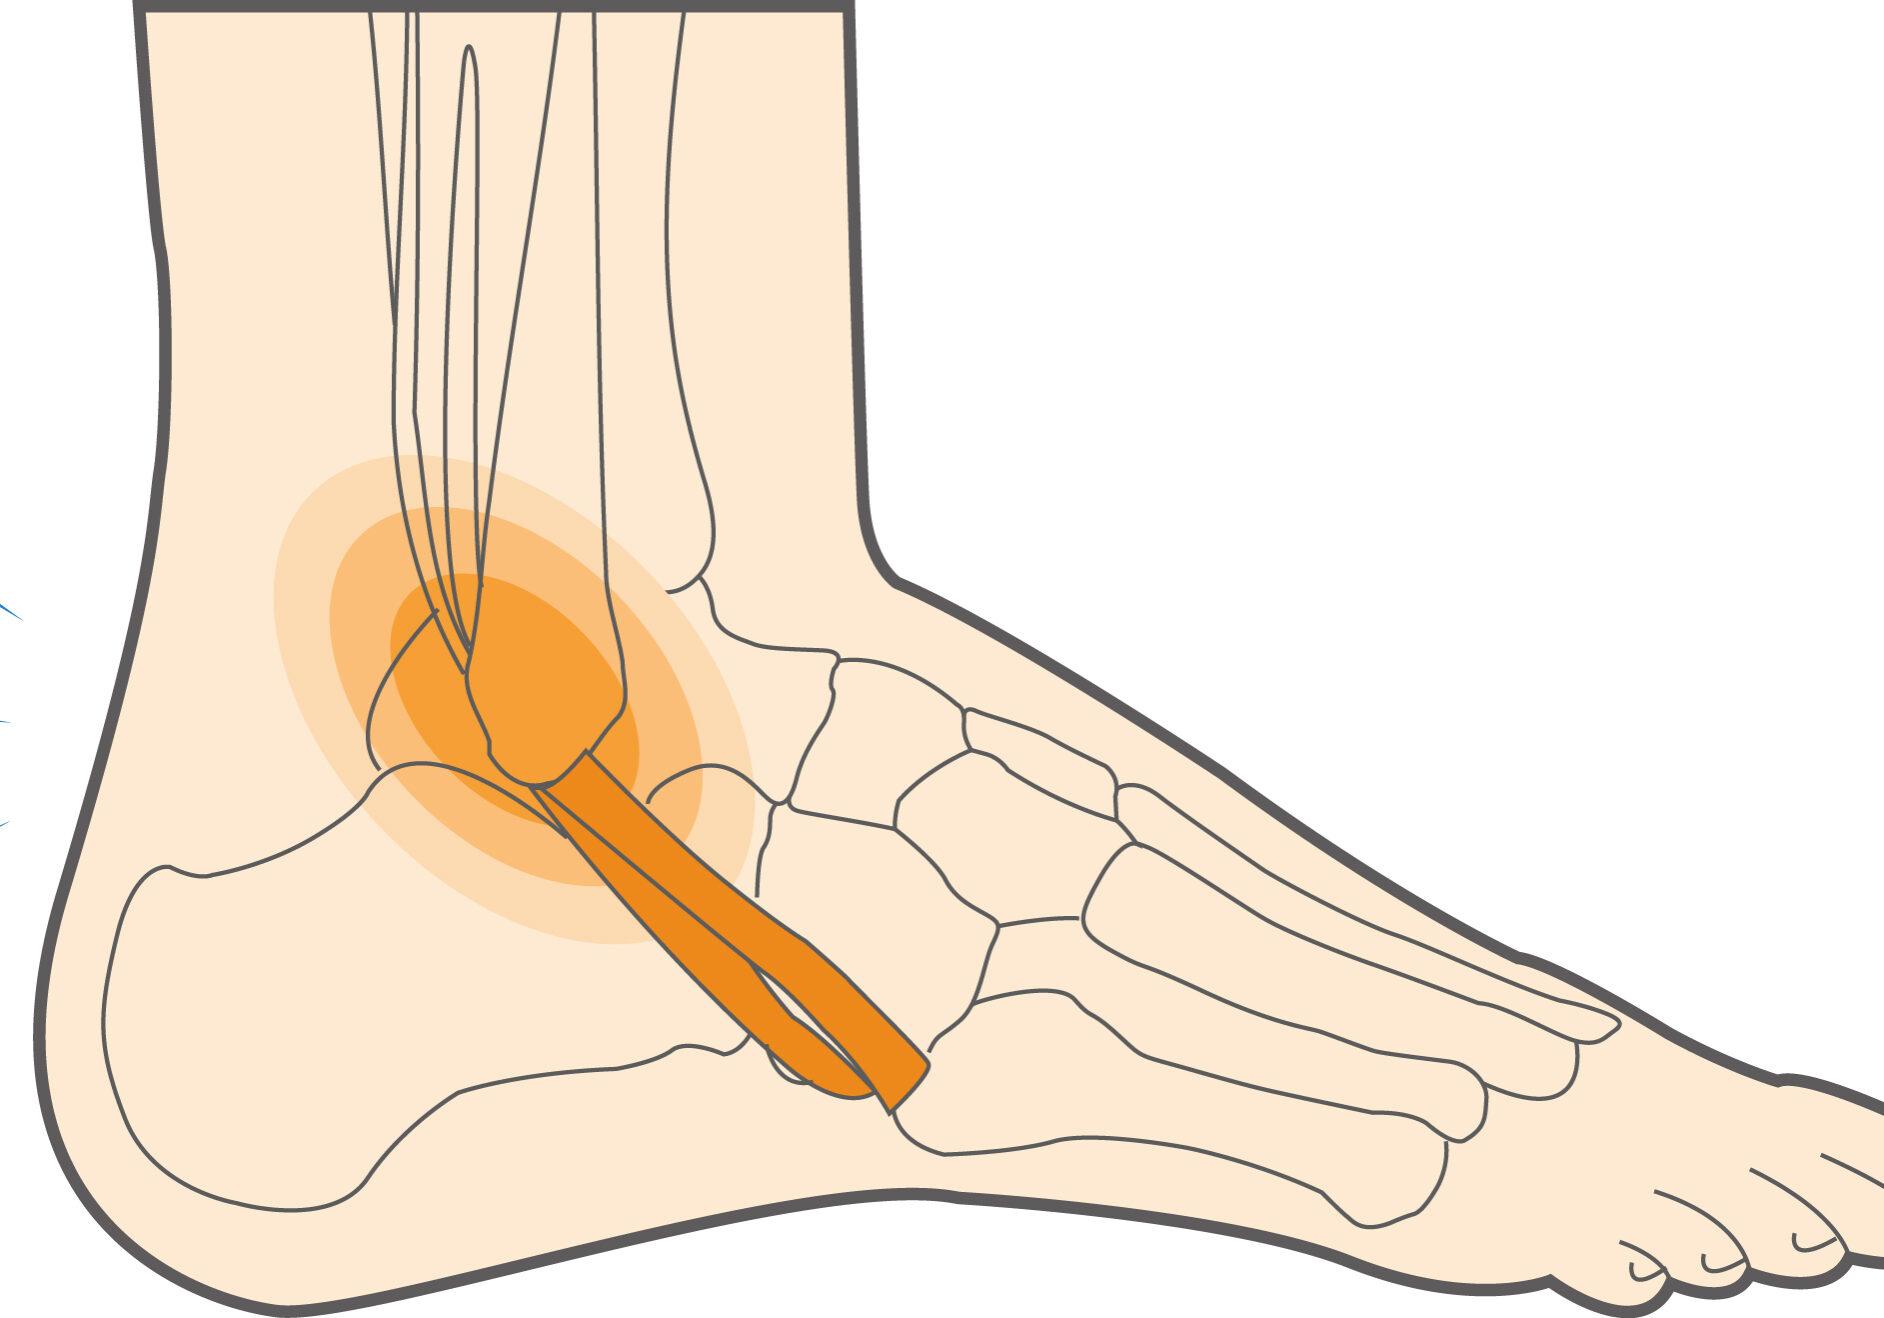 5.peroneal-tendoinis